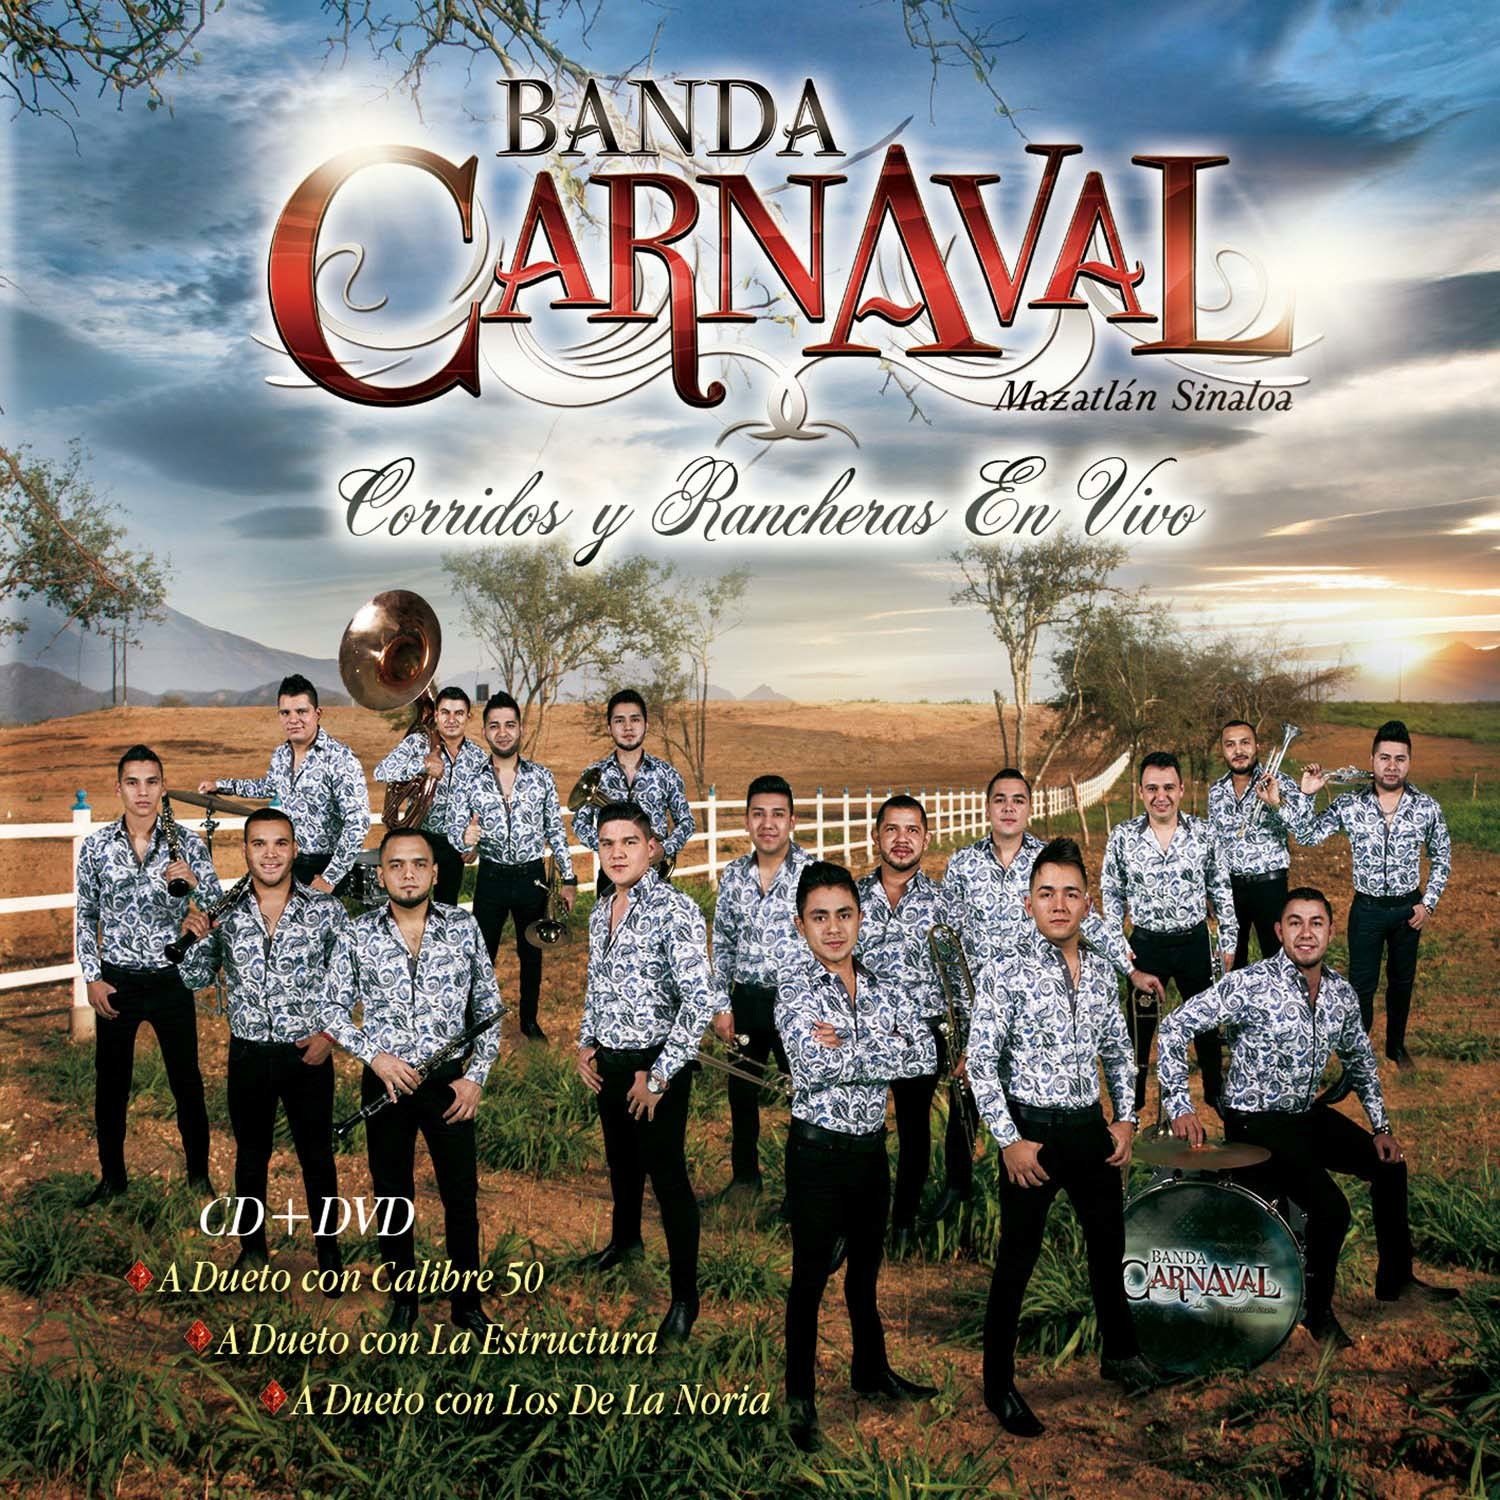 CD Shop - BANDA CARNAVAL CORRIDOS Y RANCHERAS EN VIVO